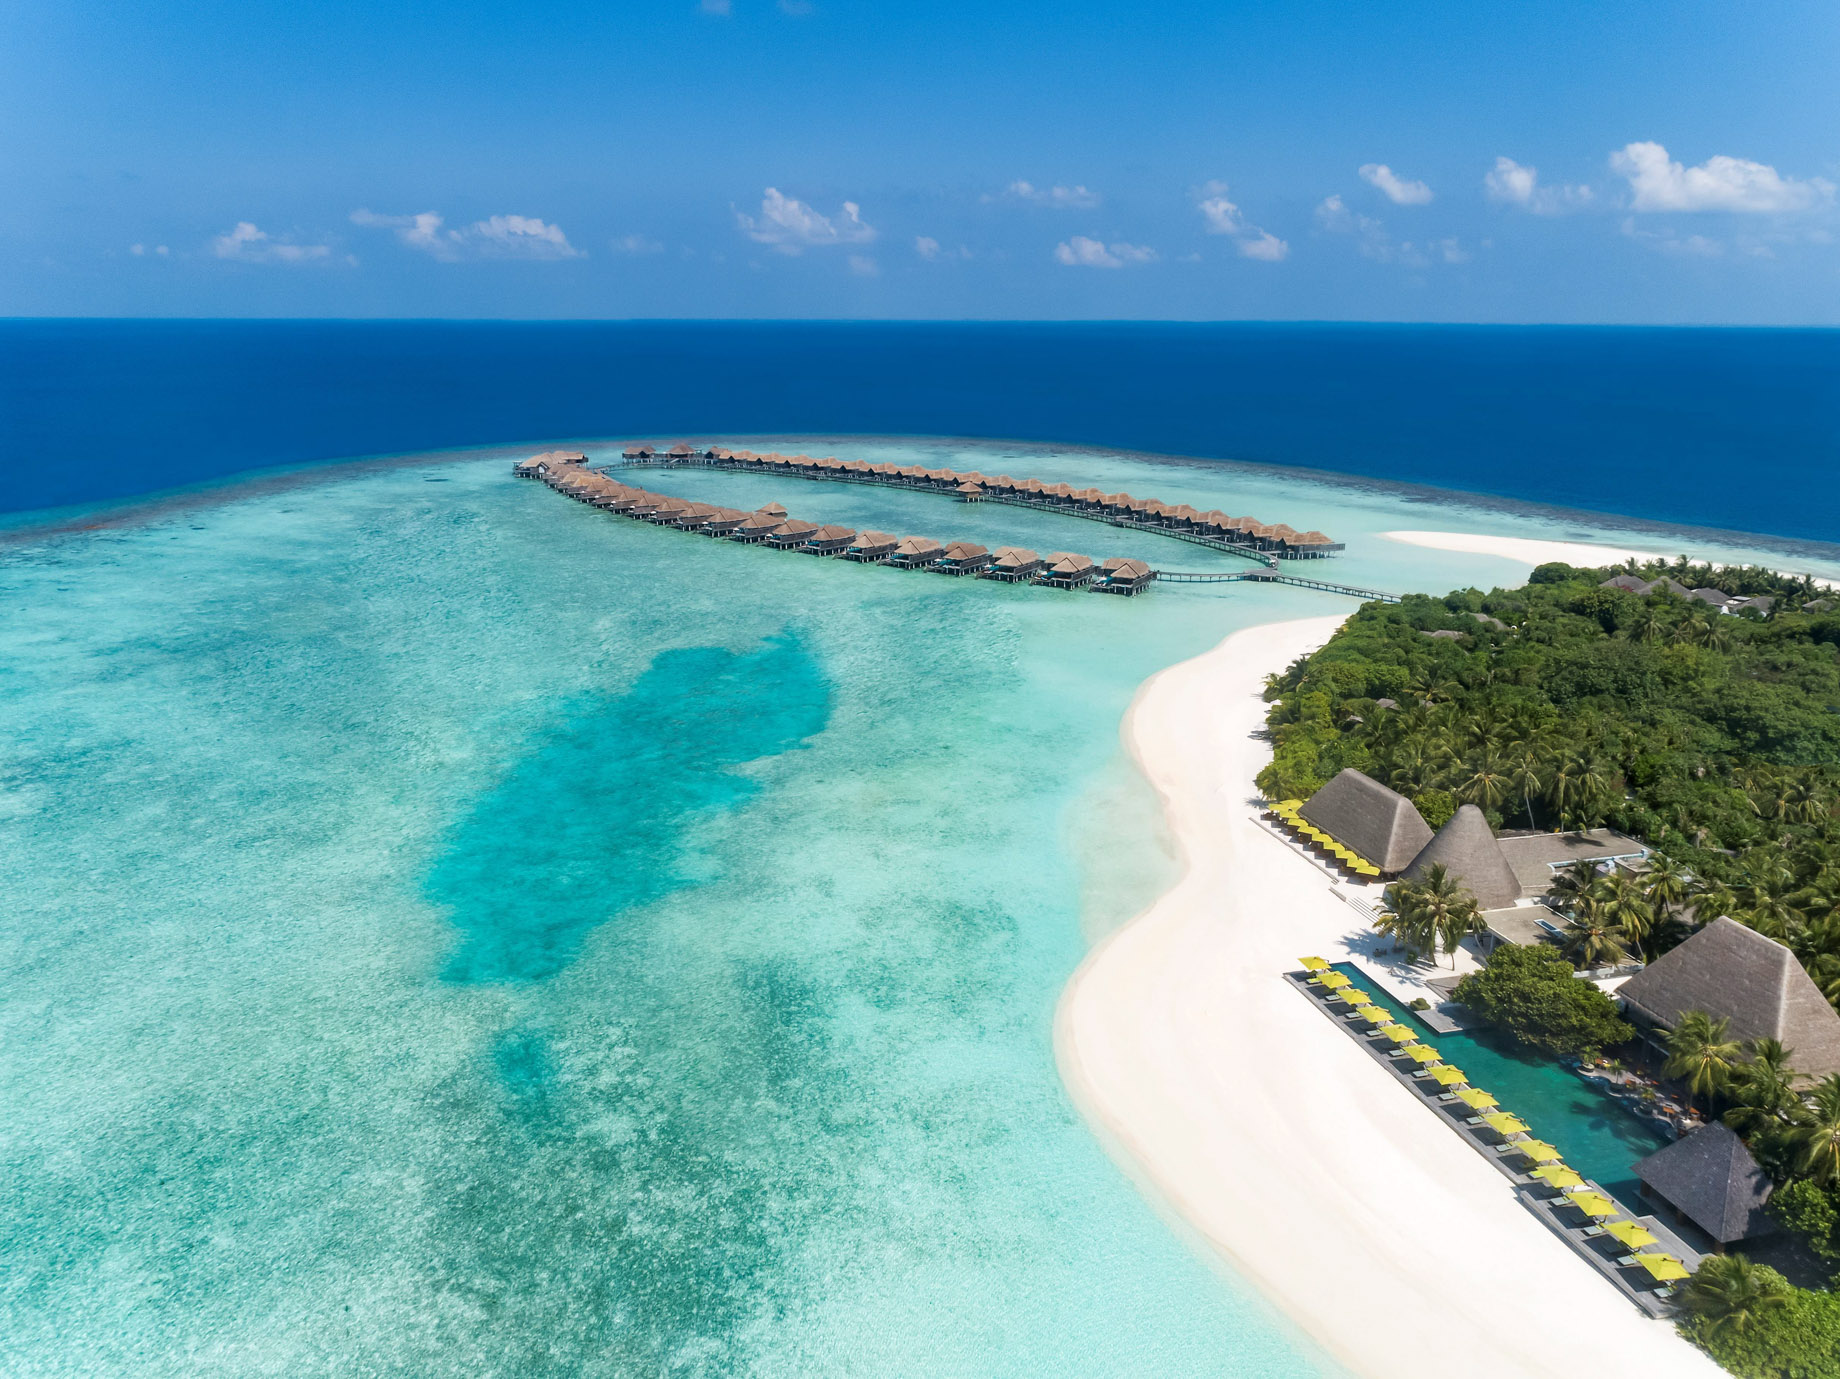 Anantara Kihavah Maldives Villas Resort – Baa Atoll, Maldives – Resort Beach Aerial View